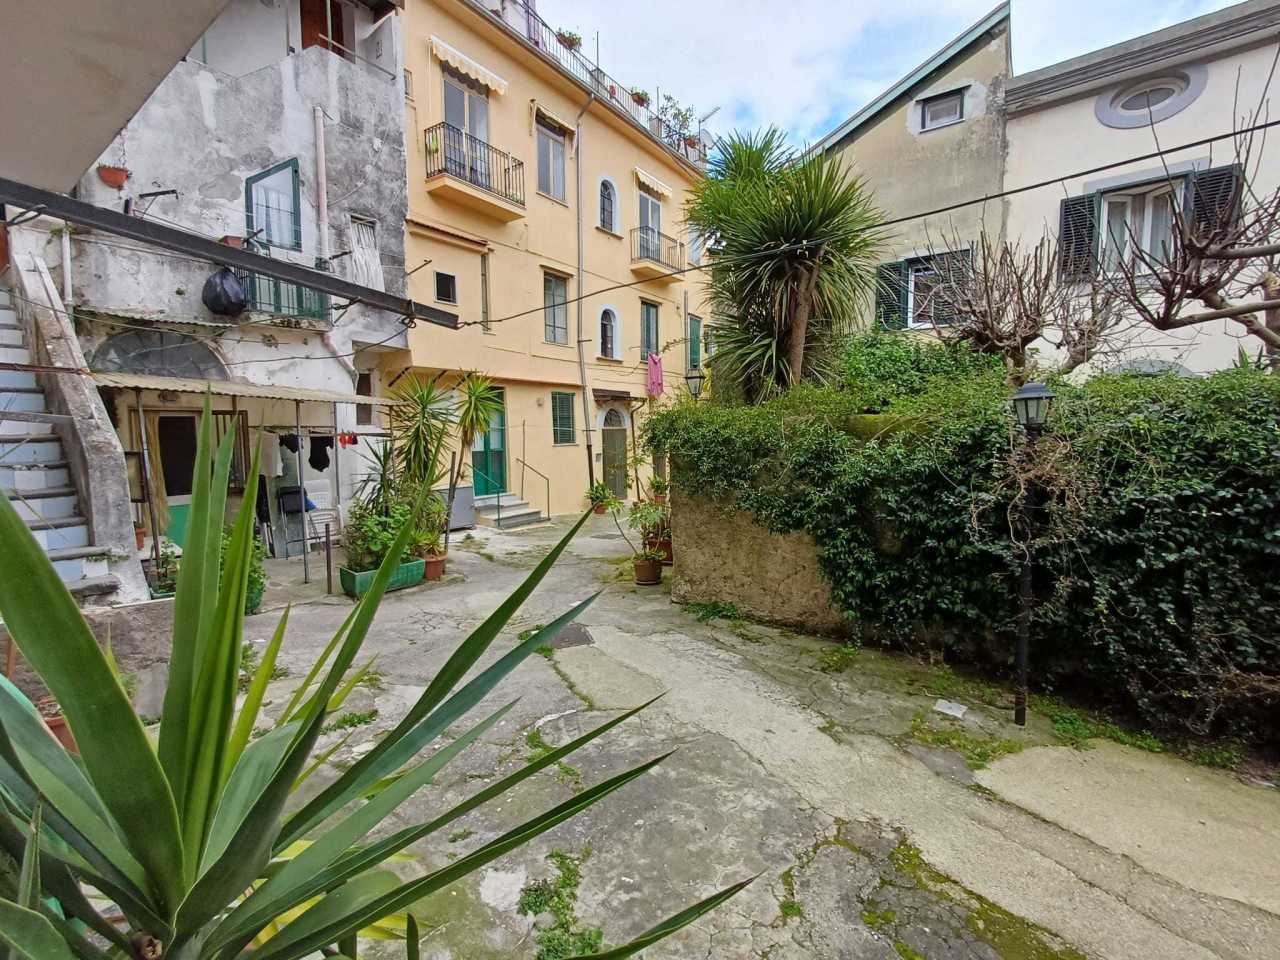 Appartamento in vendita a Cava de' Tirreni, 2 locali, prezzo € 65.000 | PortaleAgenzieImmobiliari.it